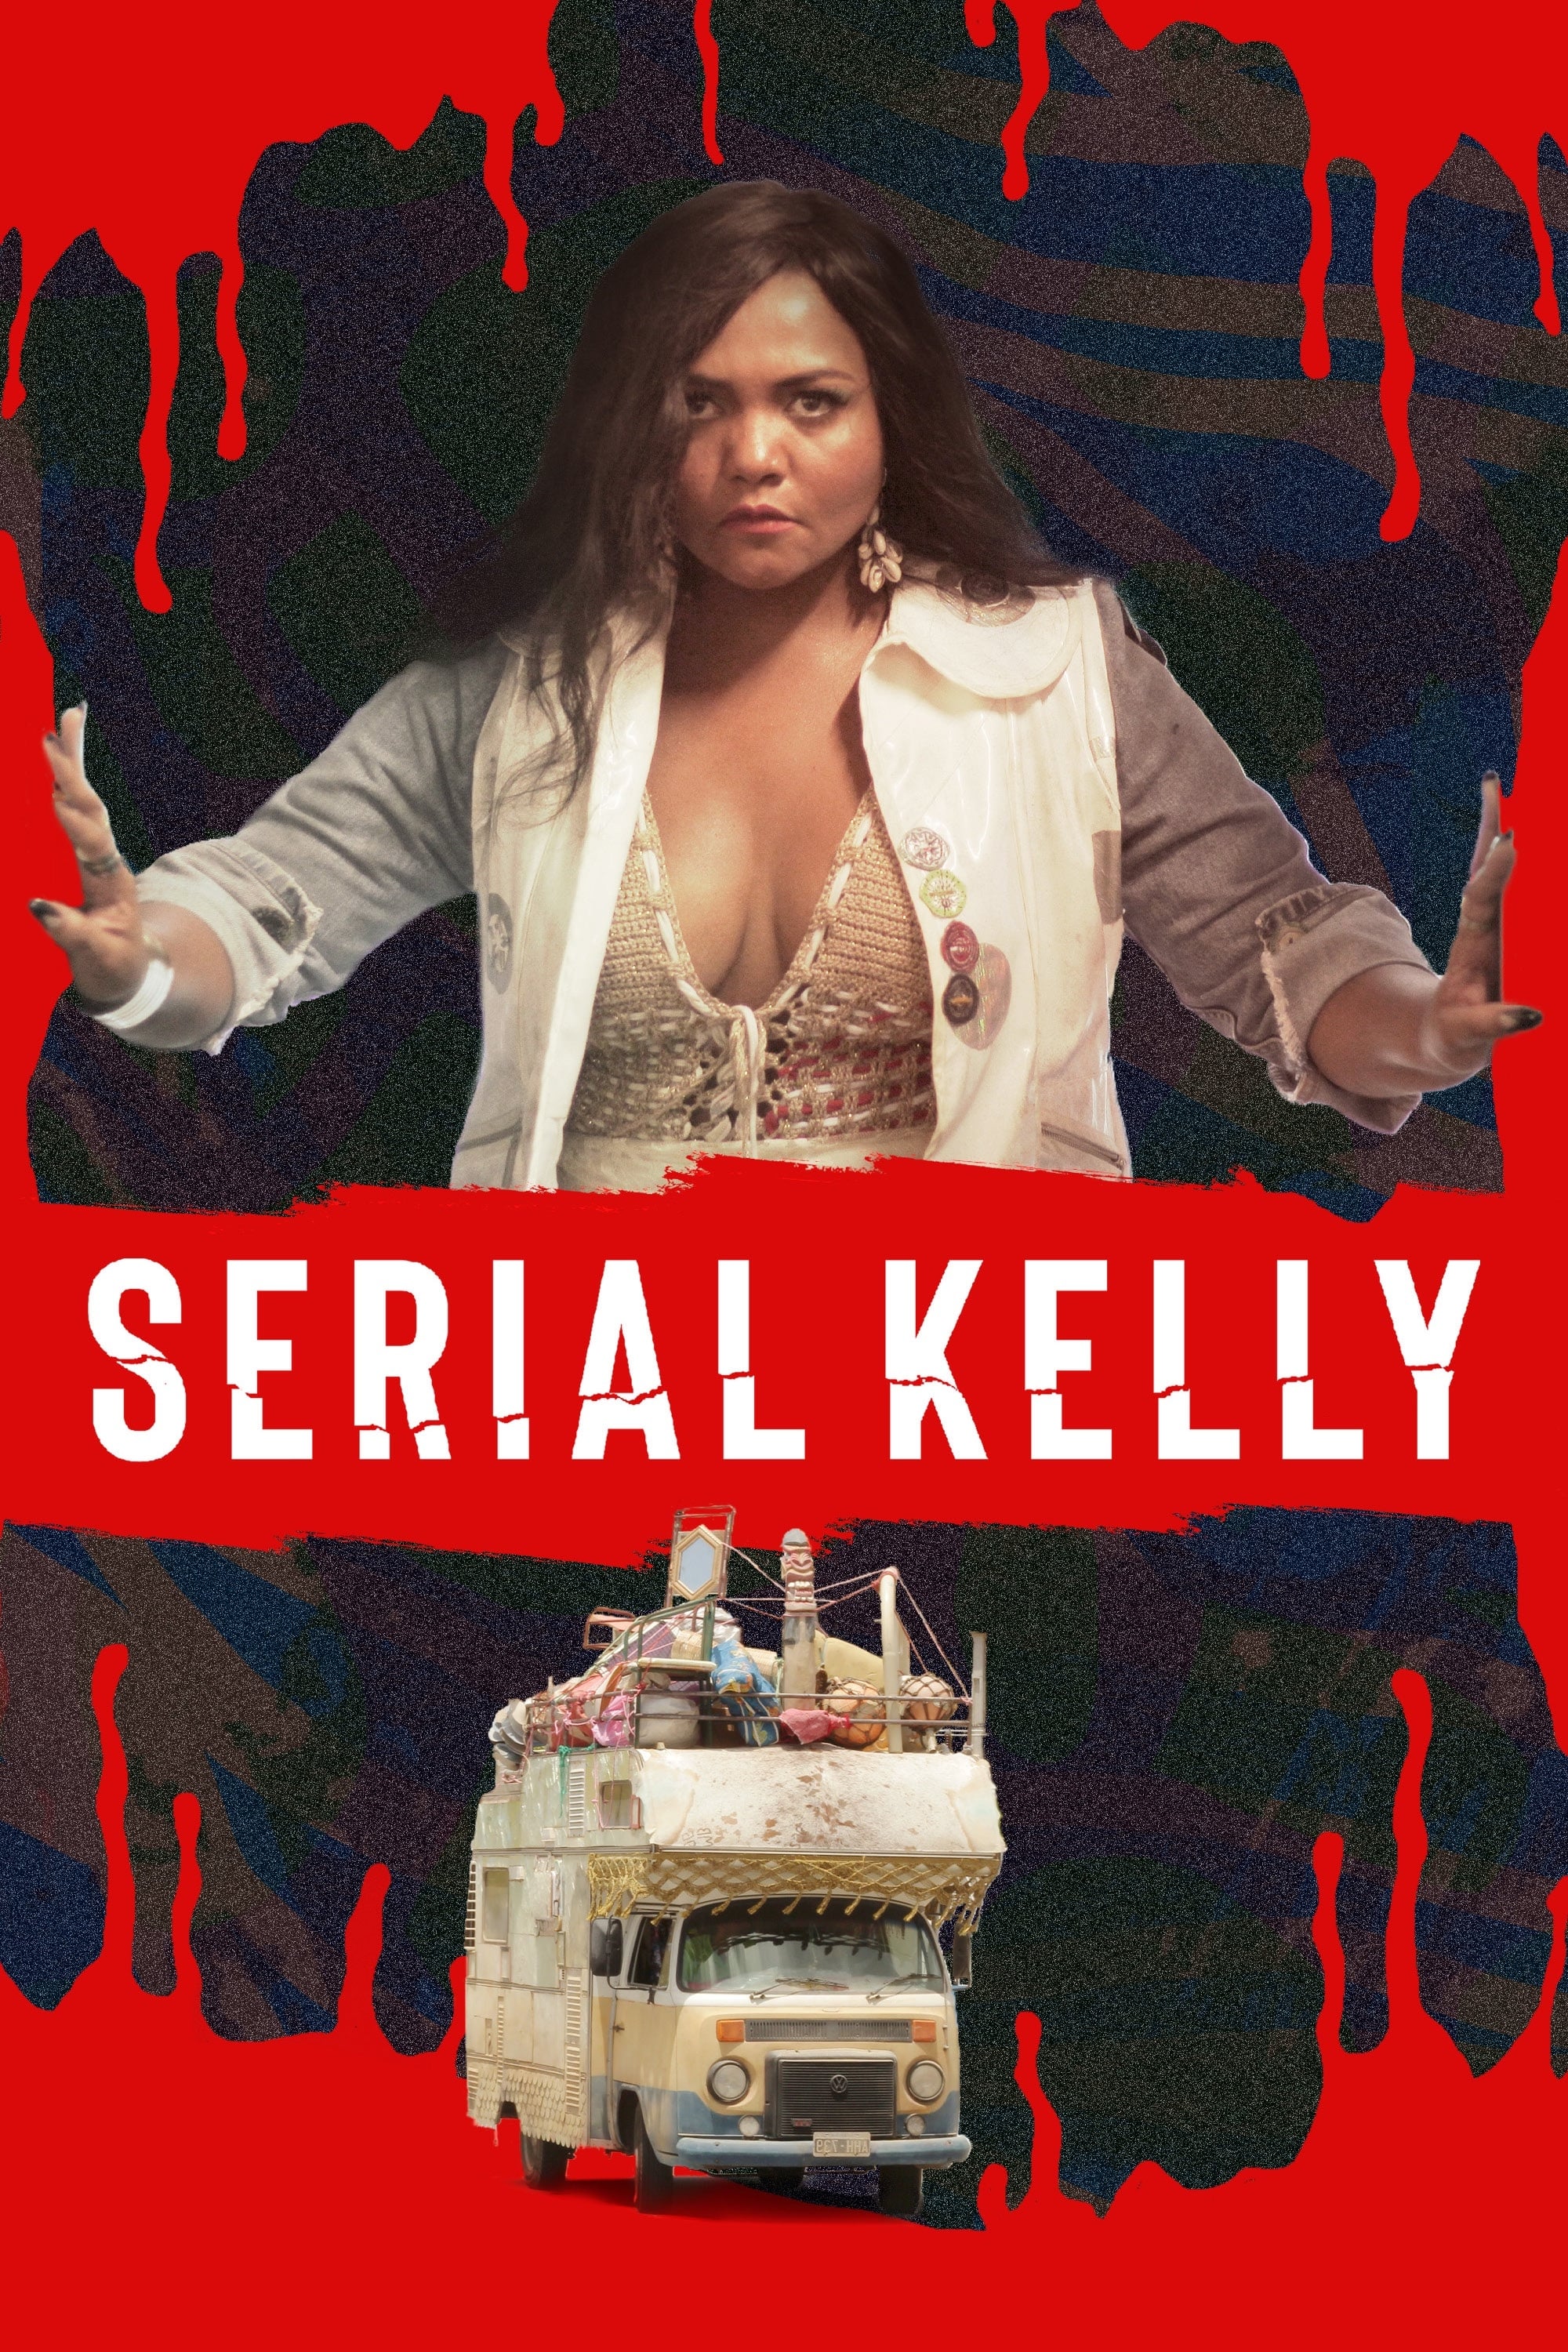 Serial Kelly